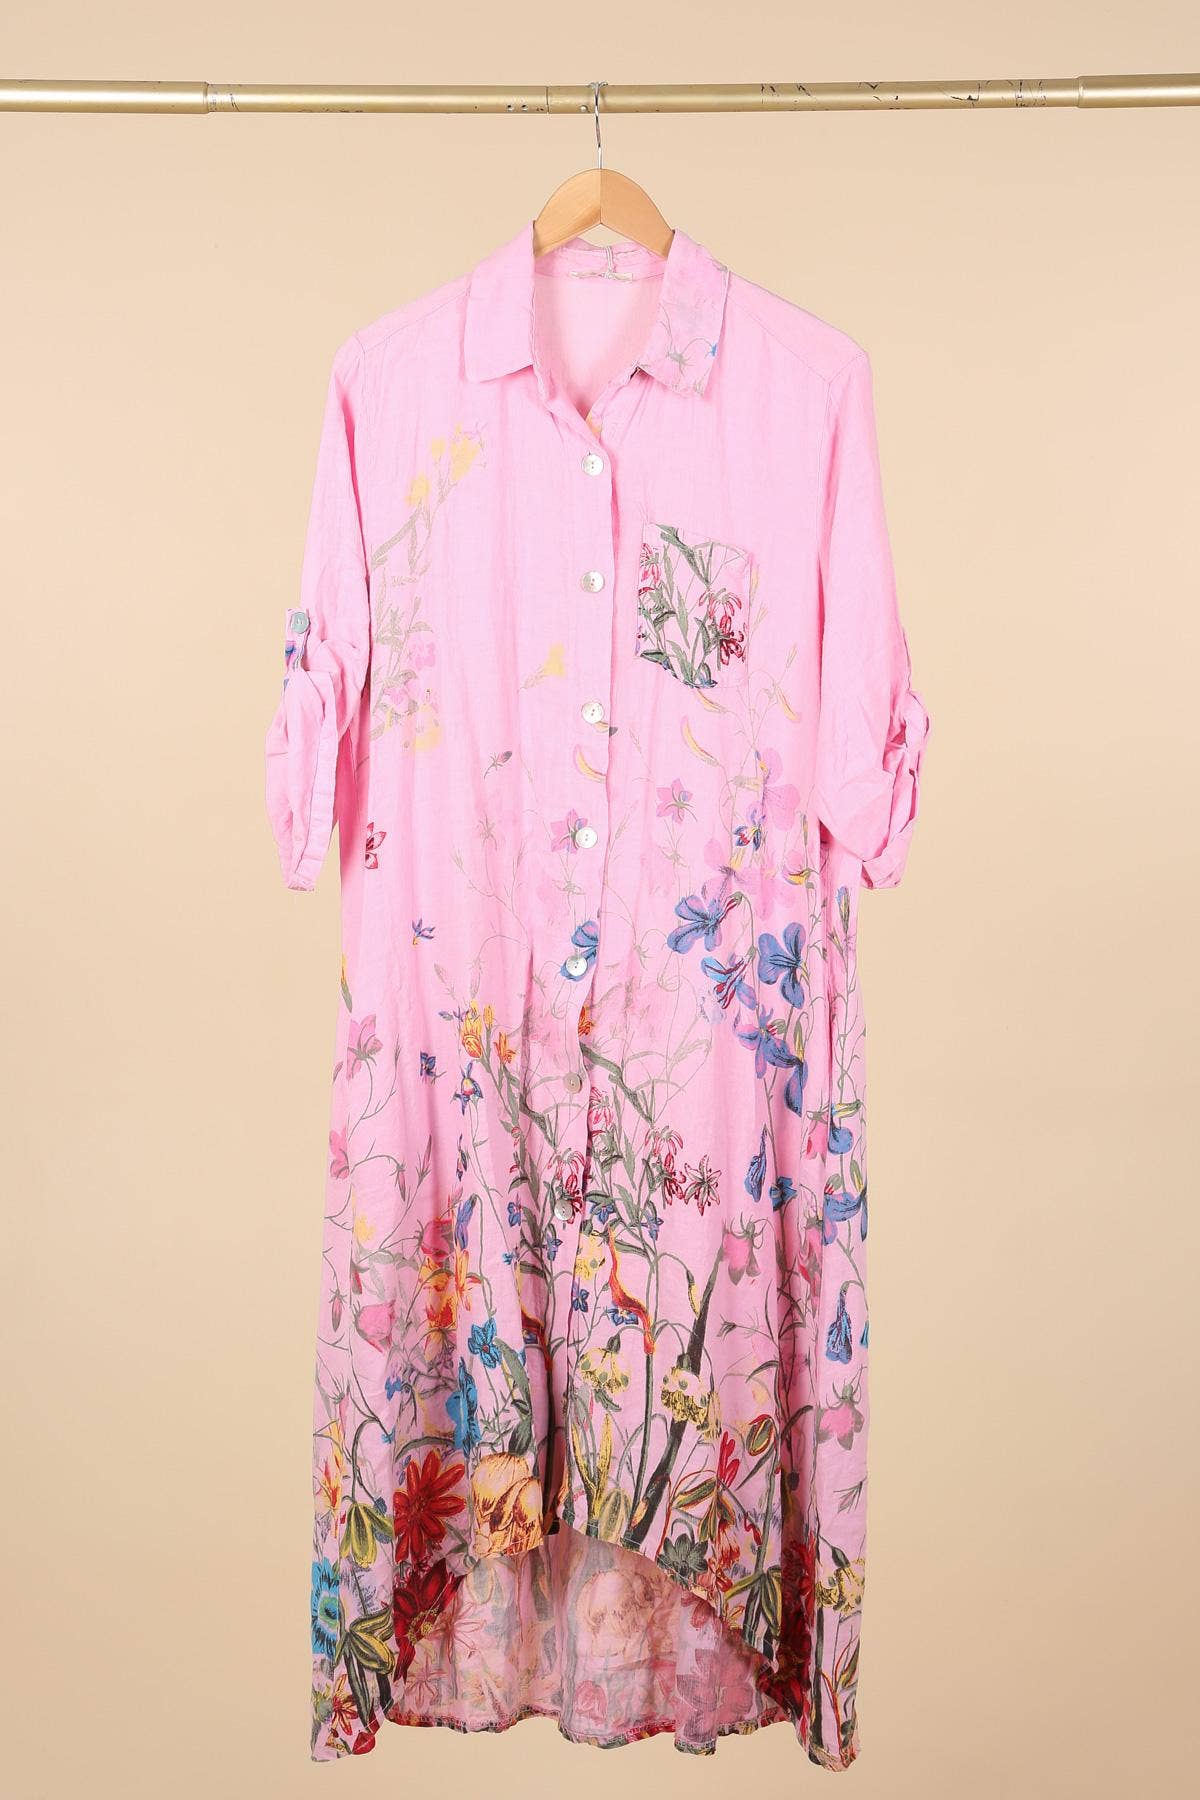 RESTOCK SOON - Floral Linen Button Up Dress